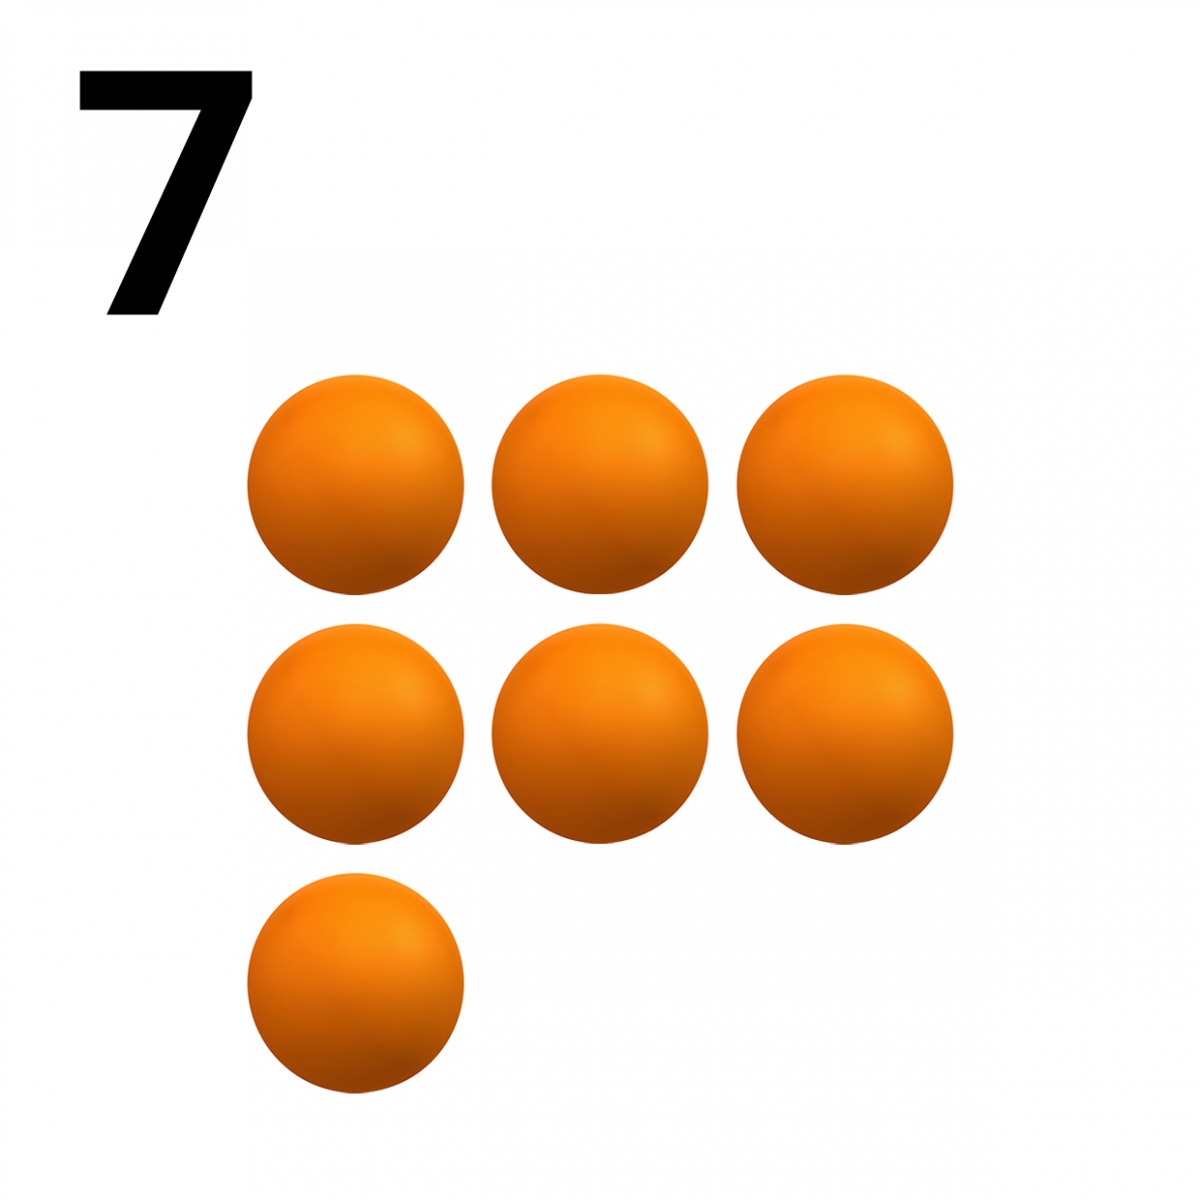 Imagen en la que se representa el número siete